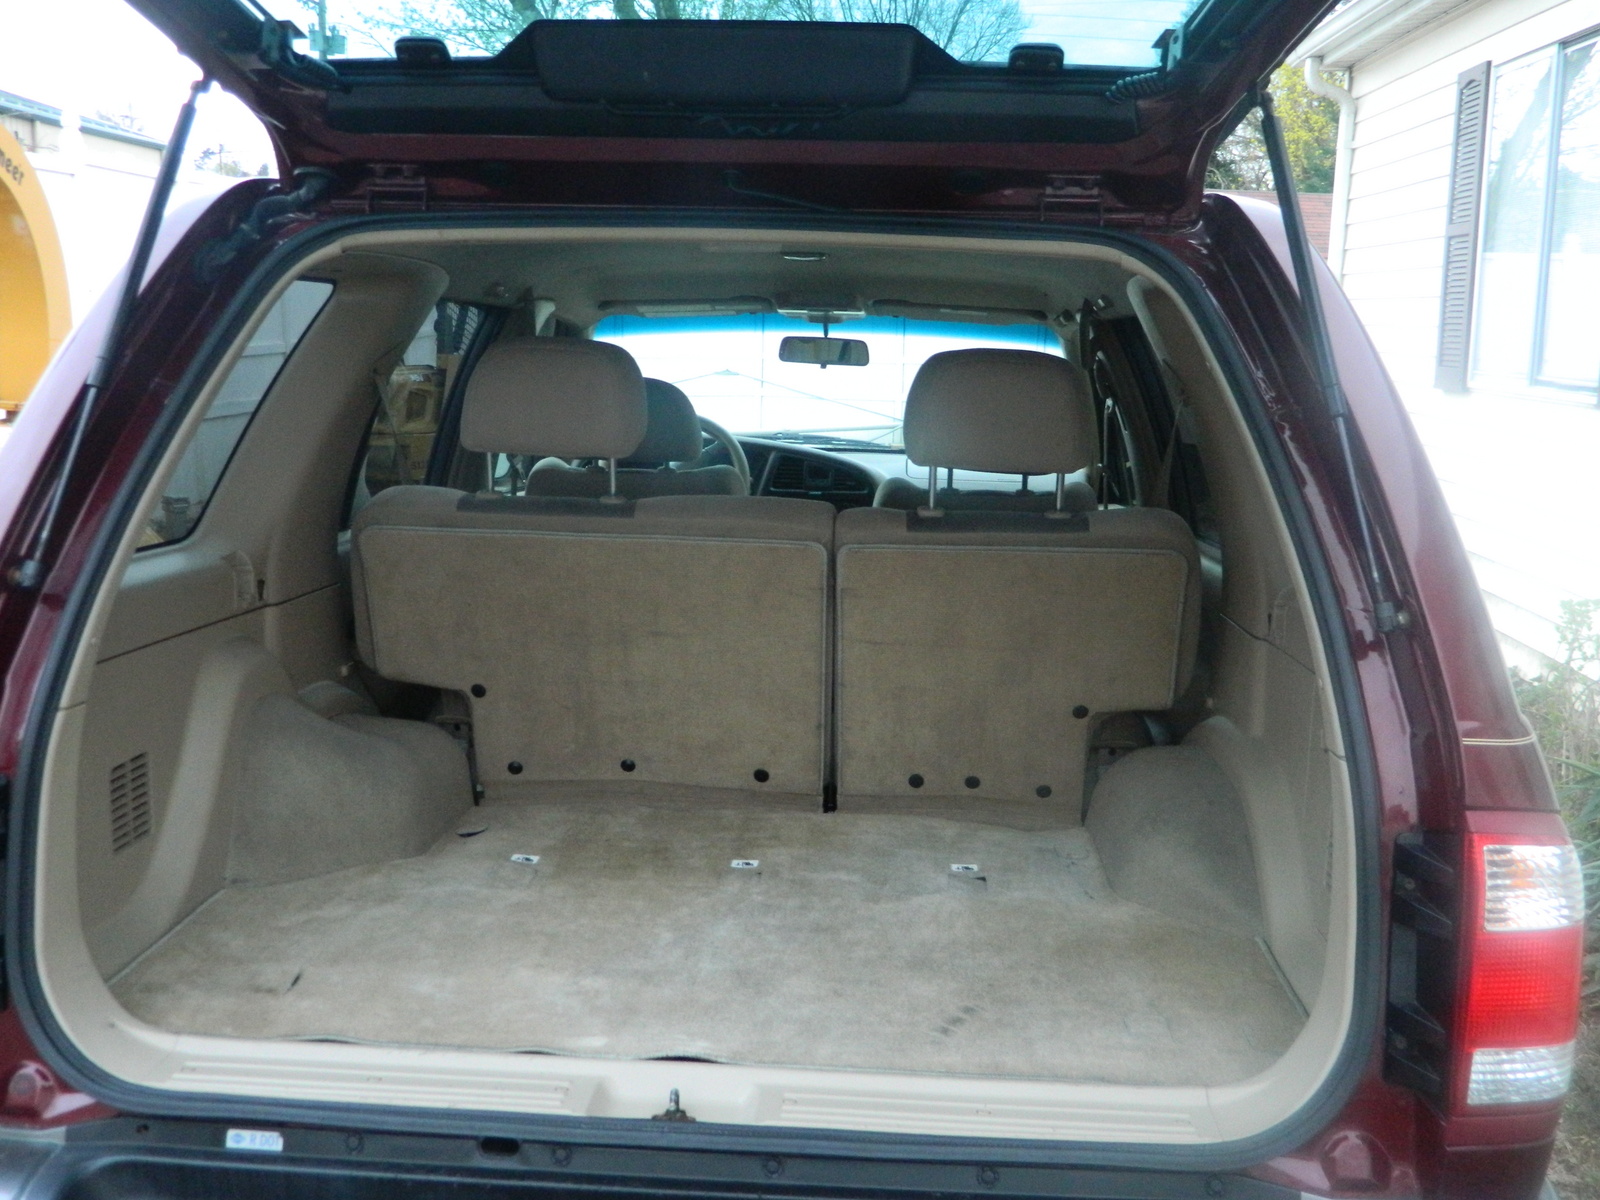 2001 Nissan pathfinder interior trim